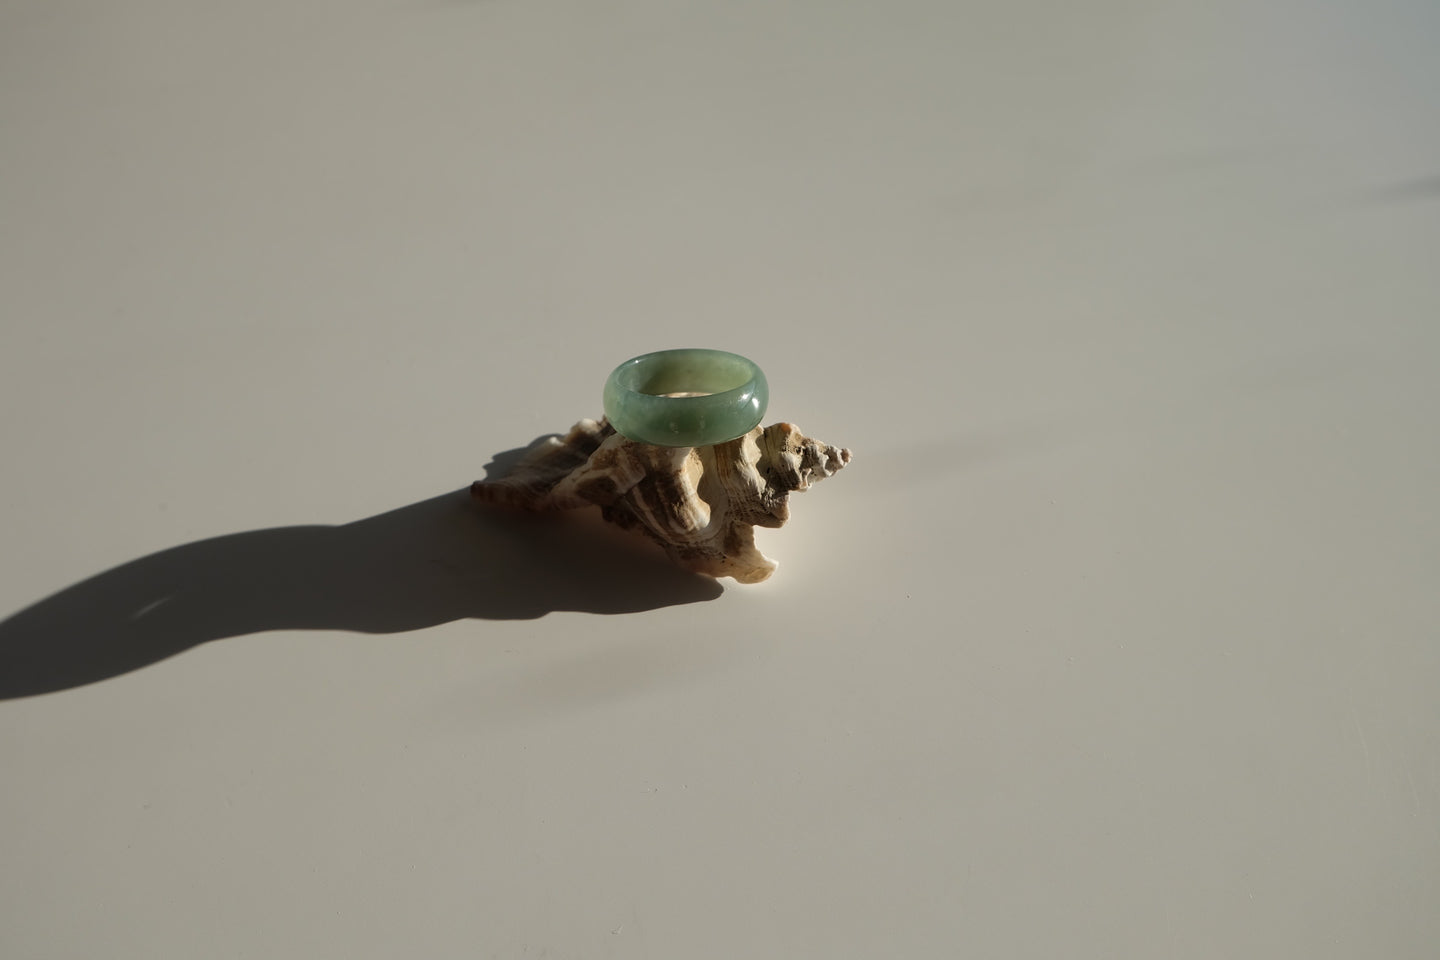 Green Jadeite Ring No. 013 - size 9.75